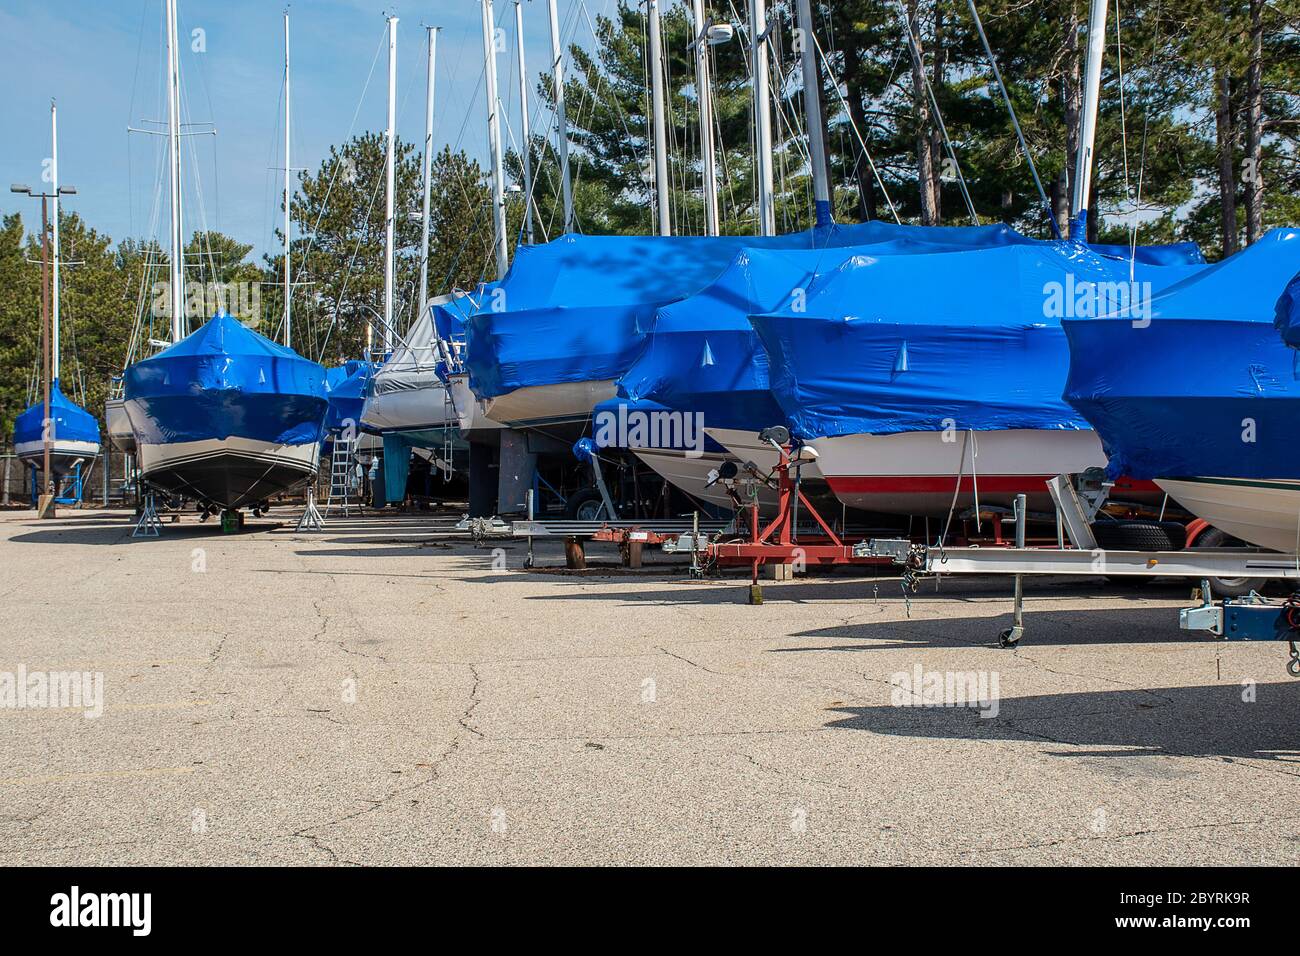 Reihe von Segelbooten mit blauen Schrumpffolie Abdeckungen im Outdoor-Lagerplatz Stockfoto